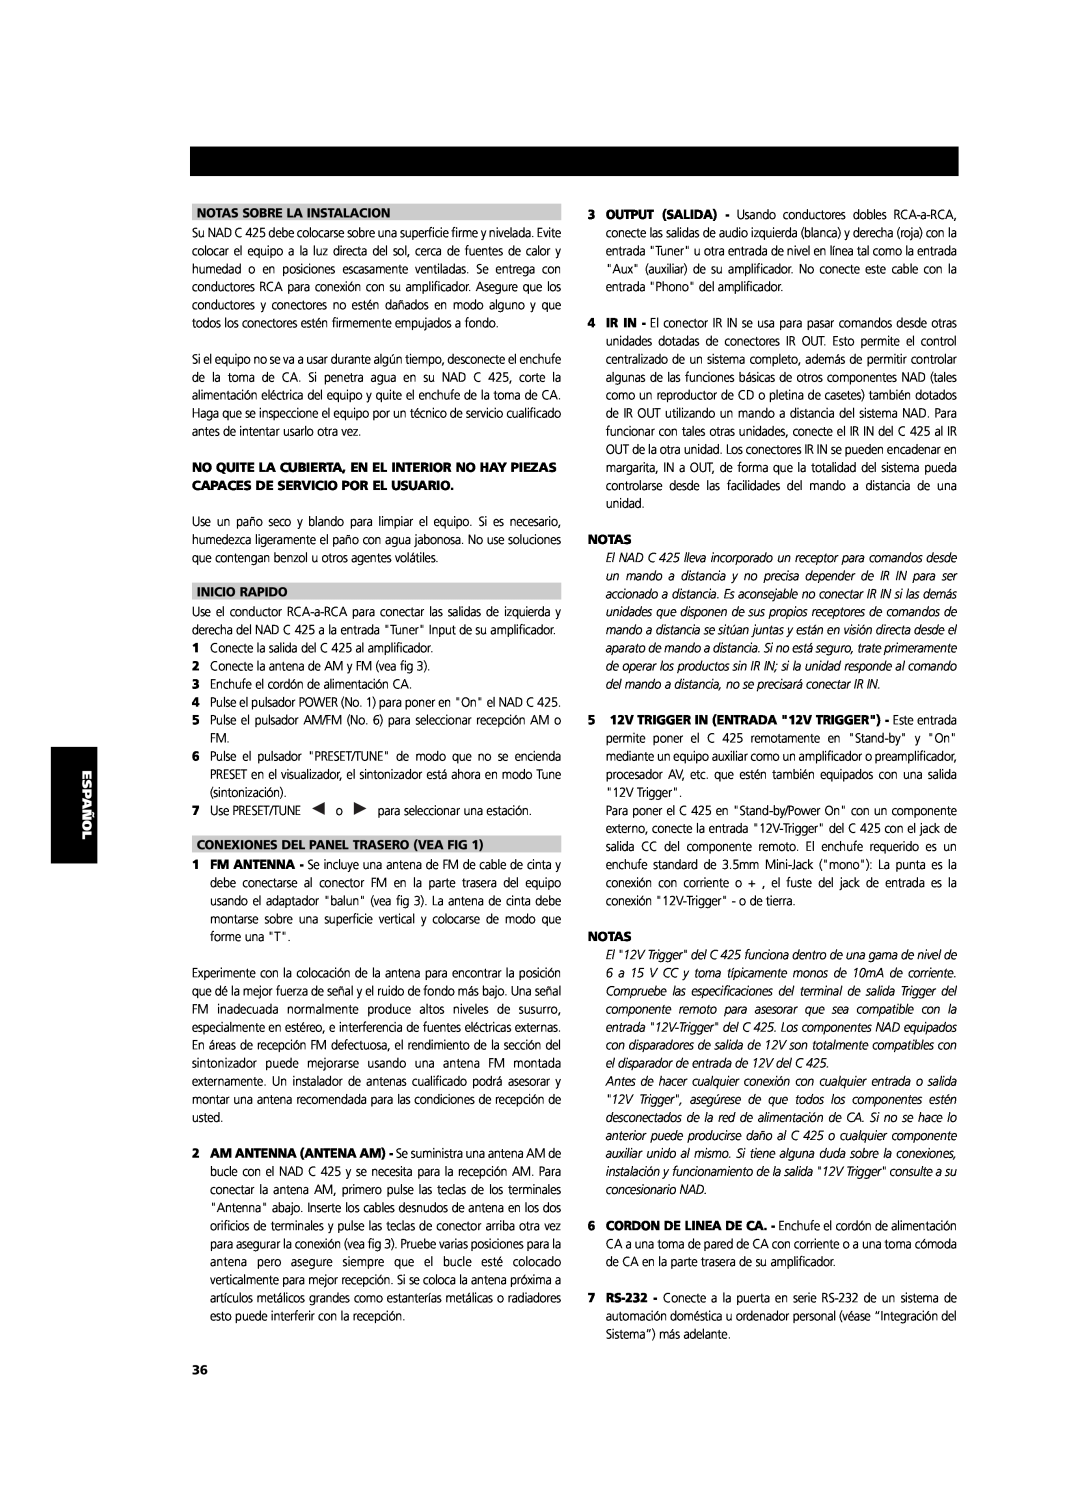 NAD C 425 owner manual Notas Sobre La Instalacion, Inicio Rapido, Conexiones Del Panel Trasero Vea Fig 